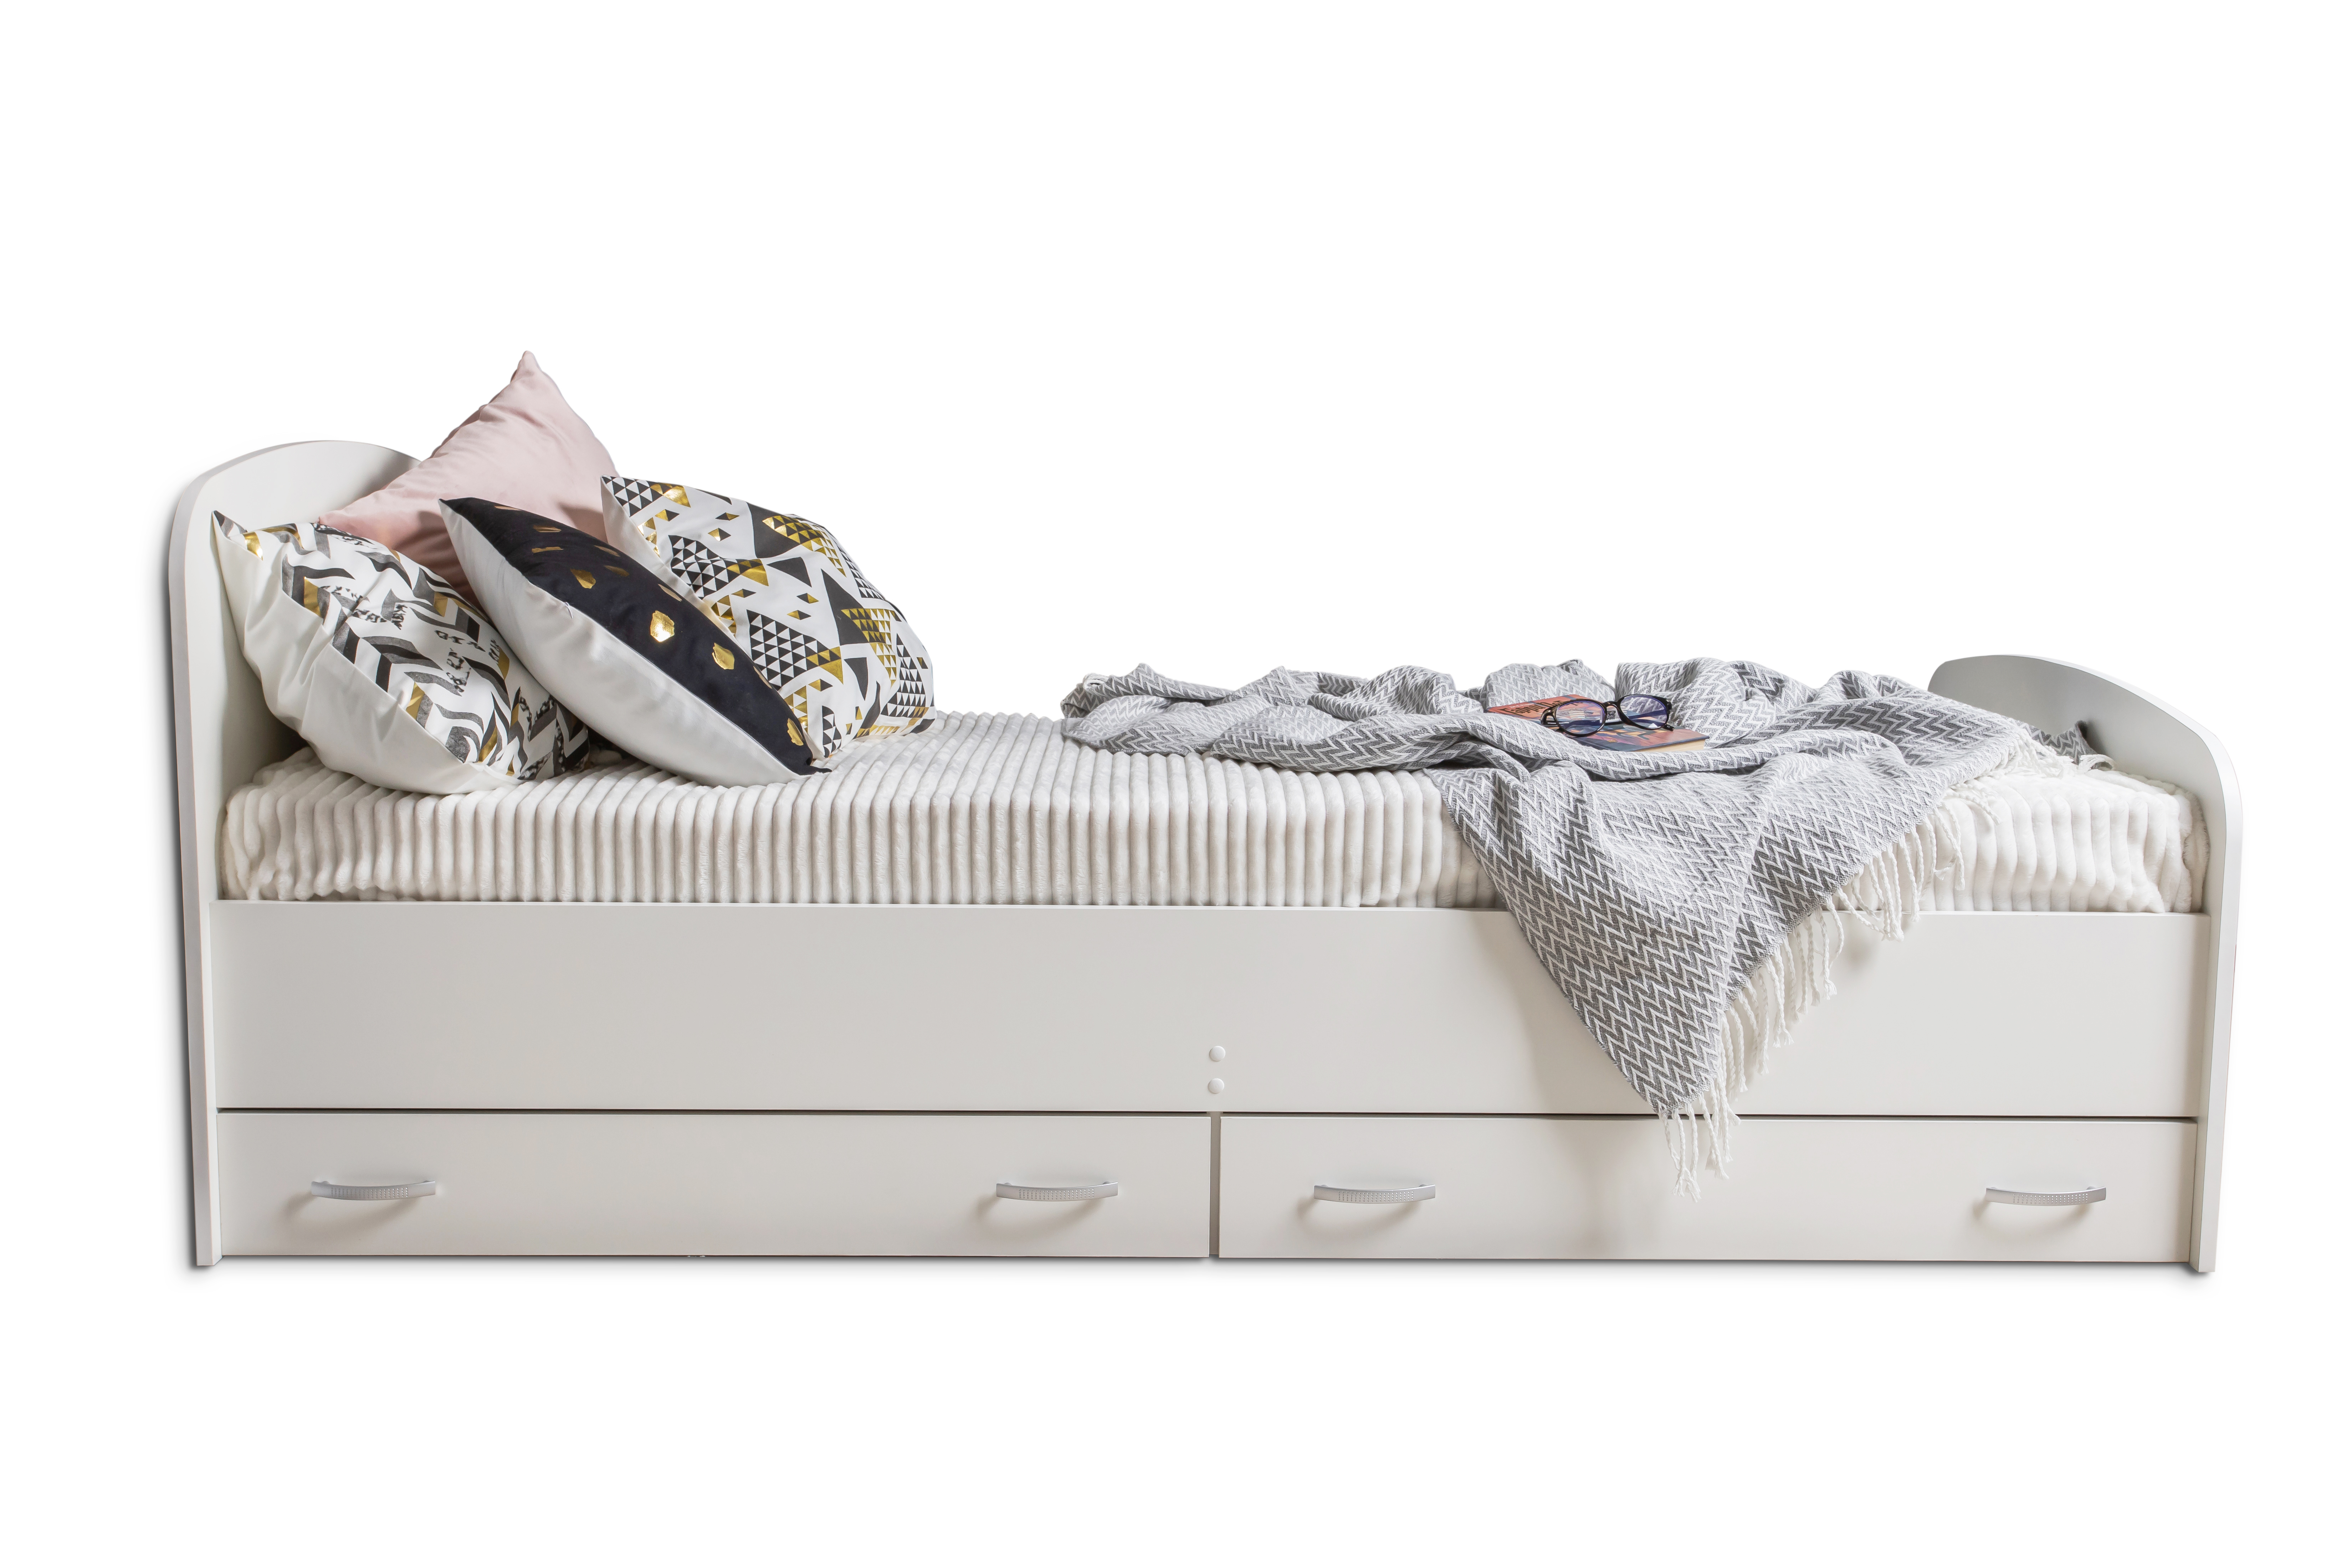 Ящики под кровать IKEA - купить выдвижной кроватный ящик - IKEA